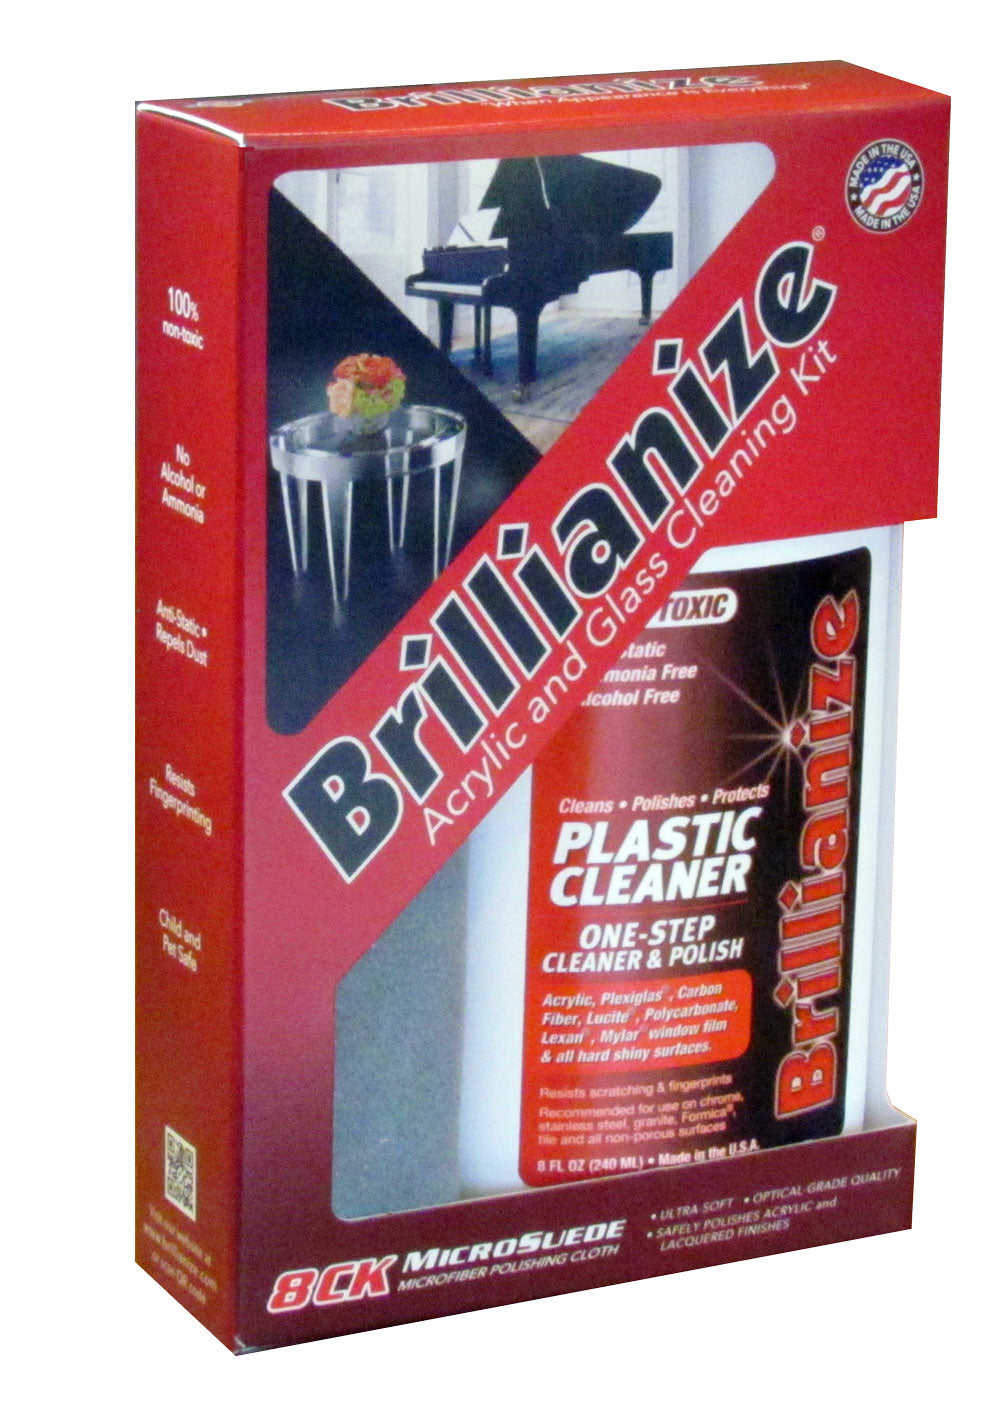 Brillianize Instant Detailer Kit Wet/Dry Polishing Wipes for Glass &  Plastic